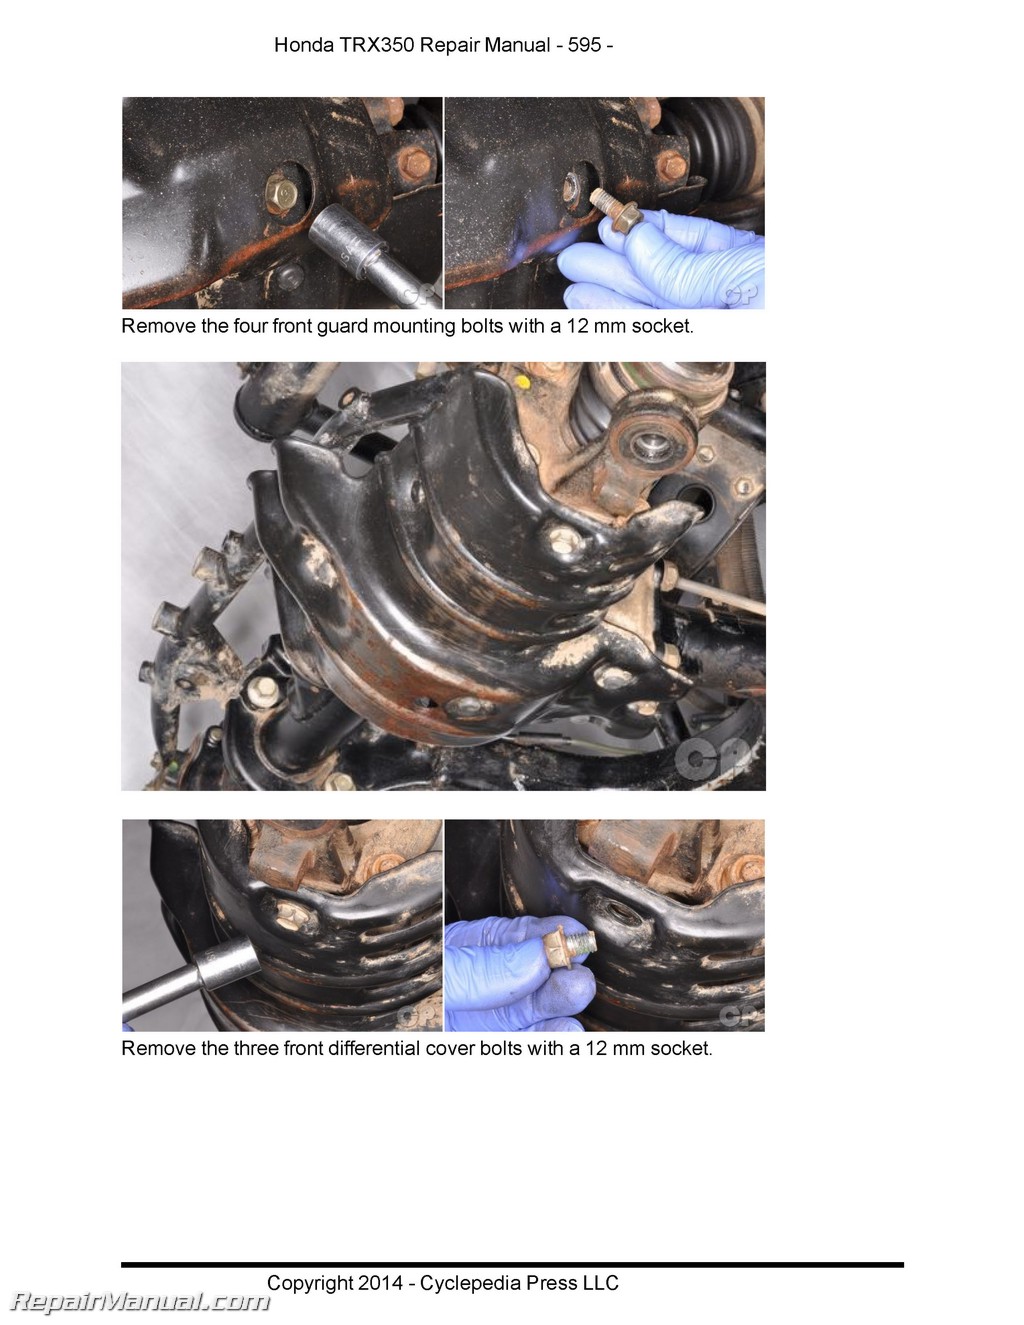 Honda Trx 350 Repair Manual Free